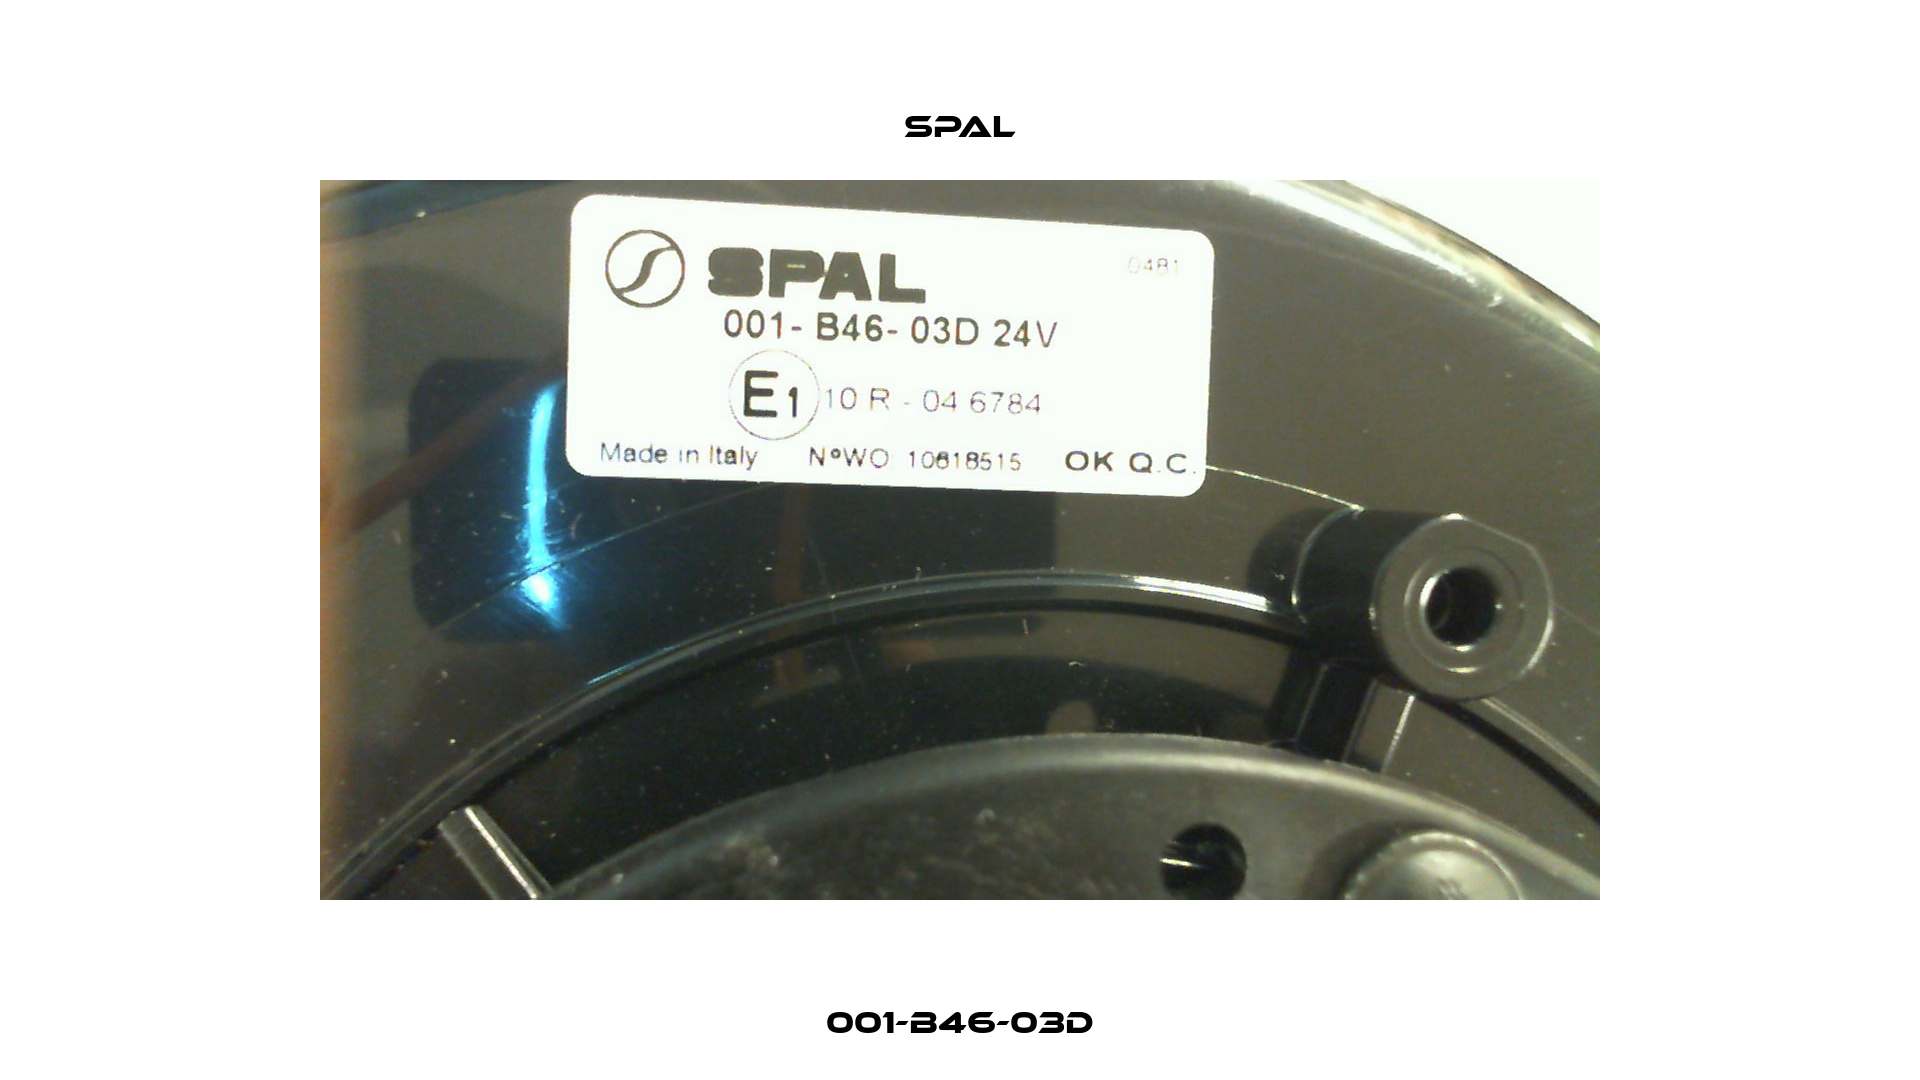 001-B46-03D SPAL